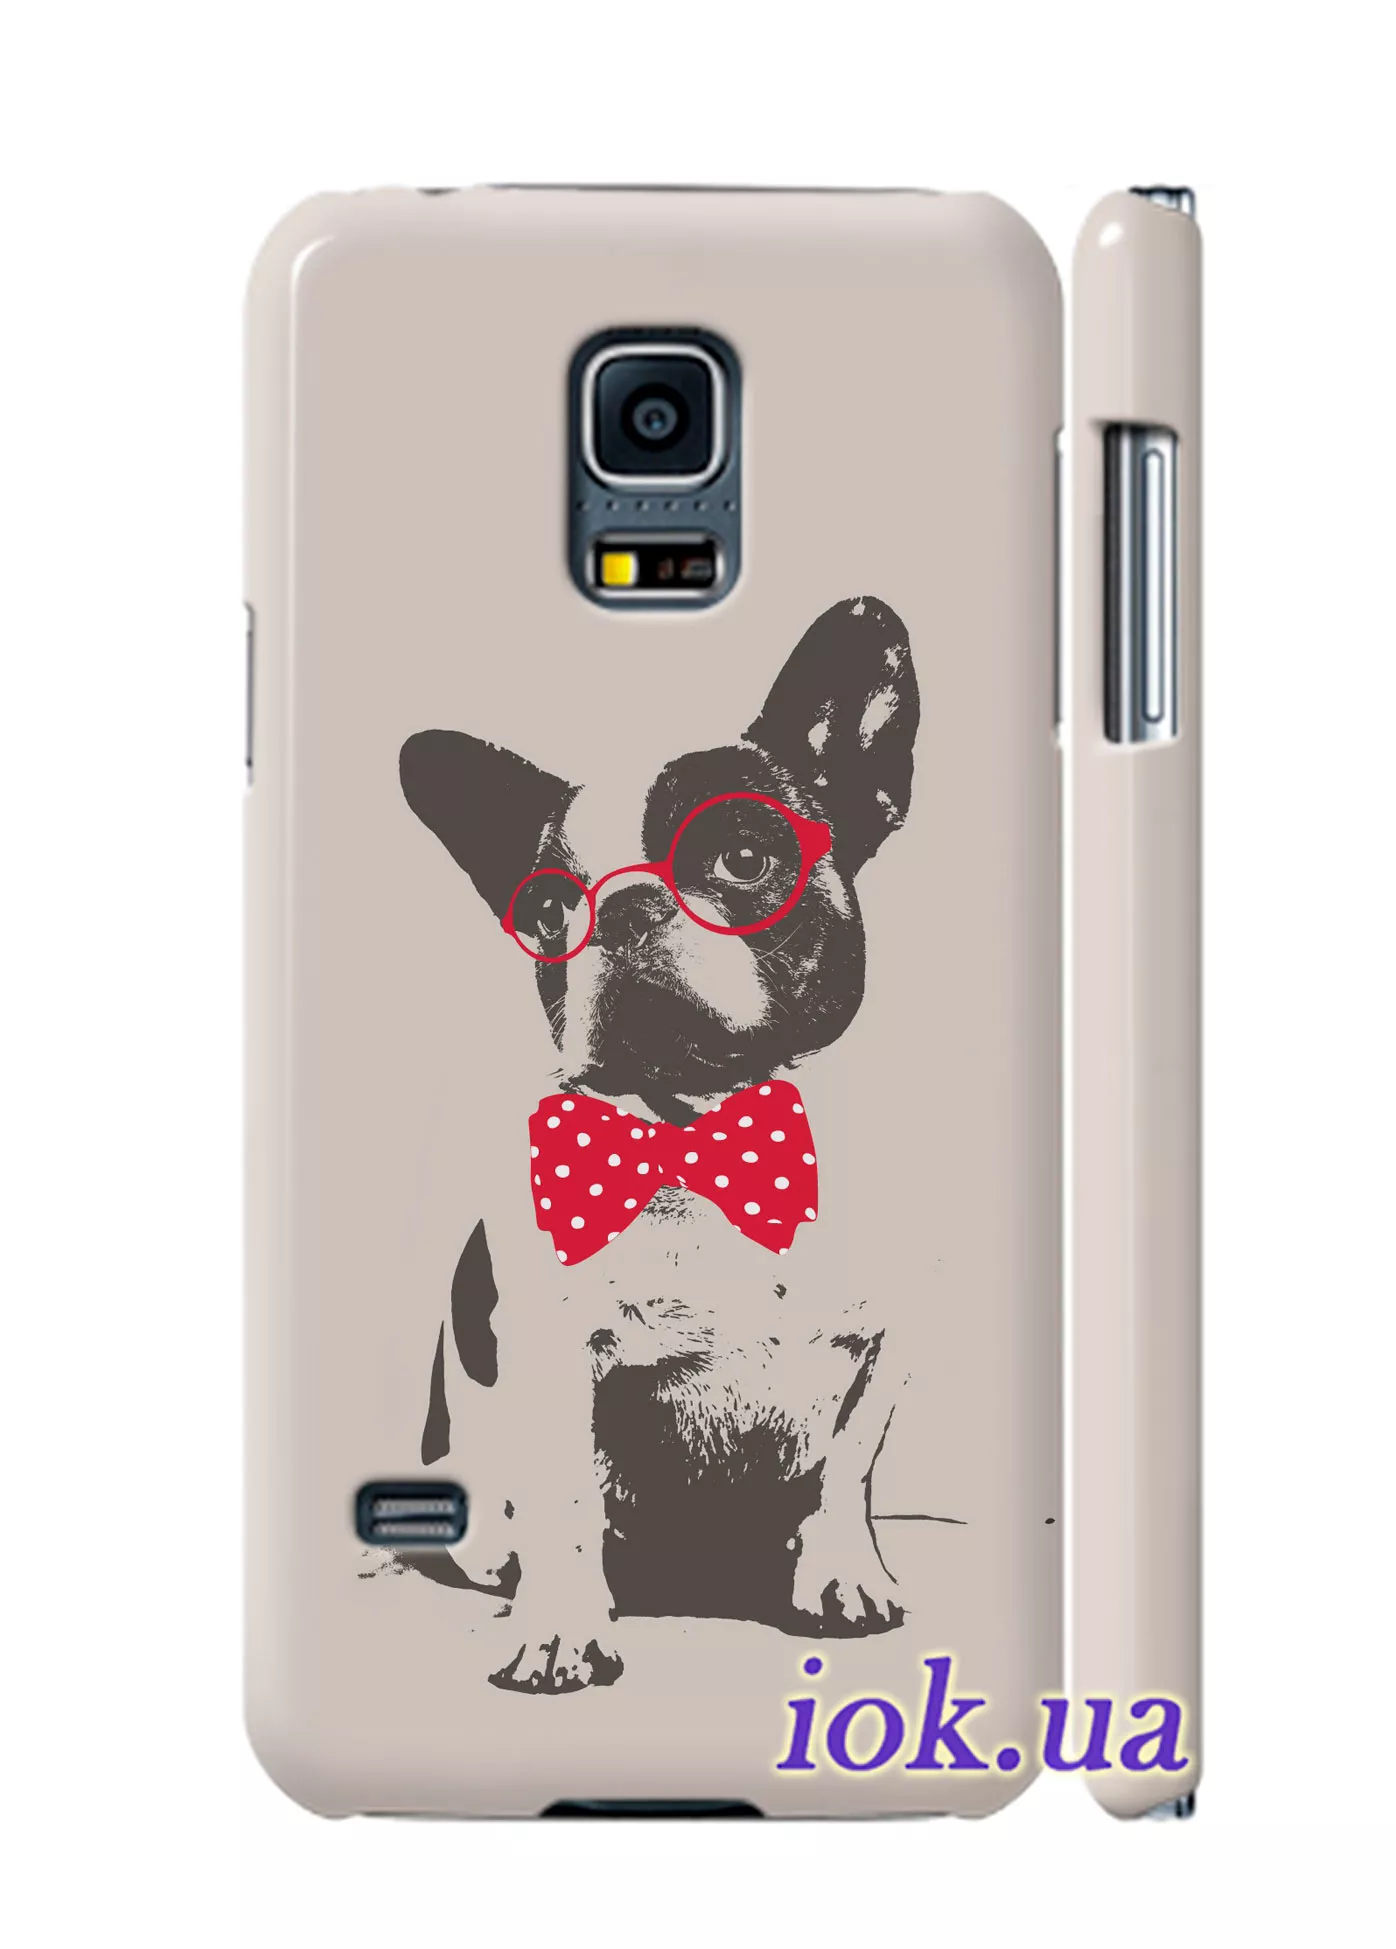 Чехол для Galaxy S5 Mini - Стильный пёс